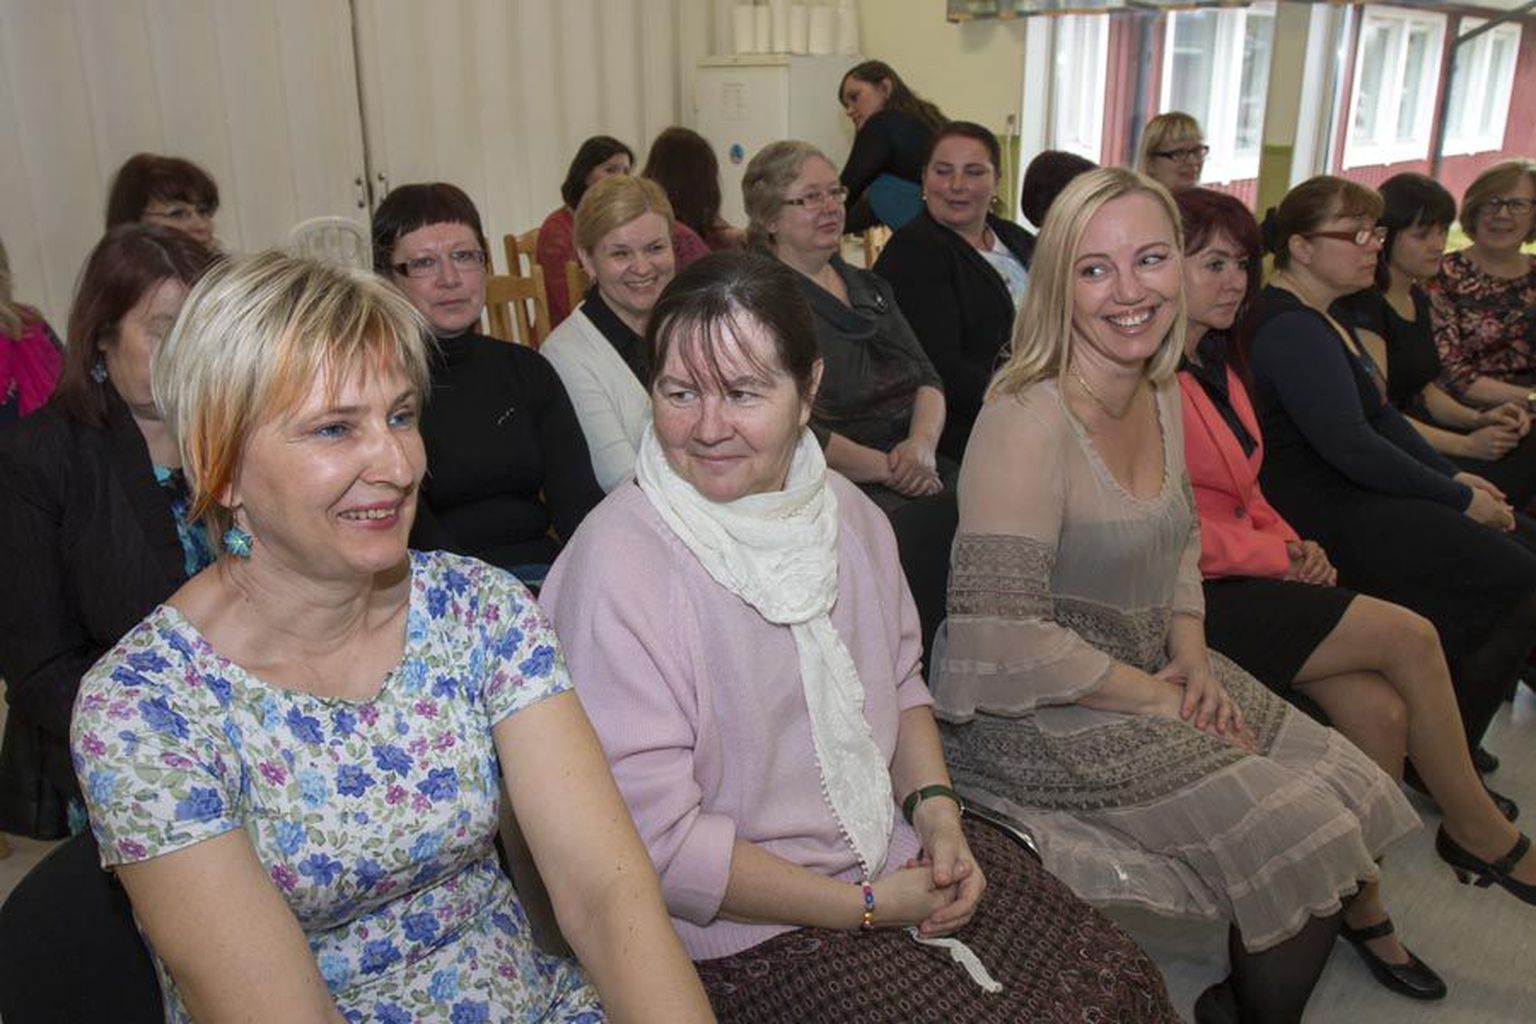 15 sihtasutuse Perekodu töötajat asusid eelmisel reedel õppima Tallinna tervishoiu kõrgkooli lapsehoidja erialale. Õpe on töökohapõhine, sestap toimus ka avaaktus Perekodu ruumides.